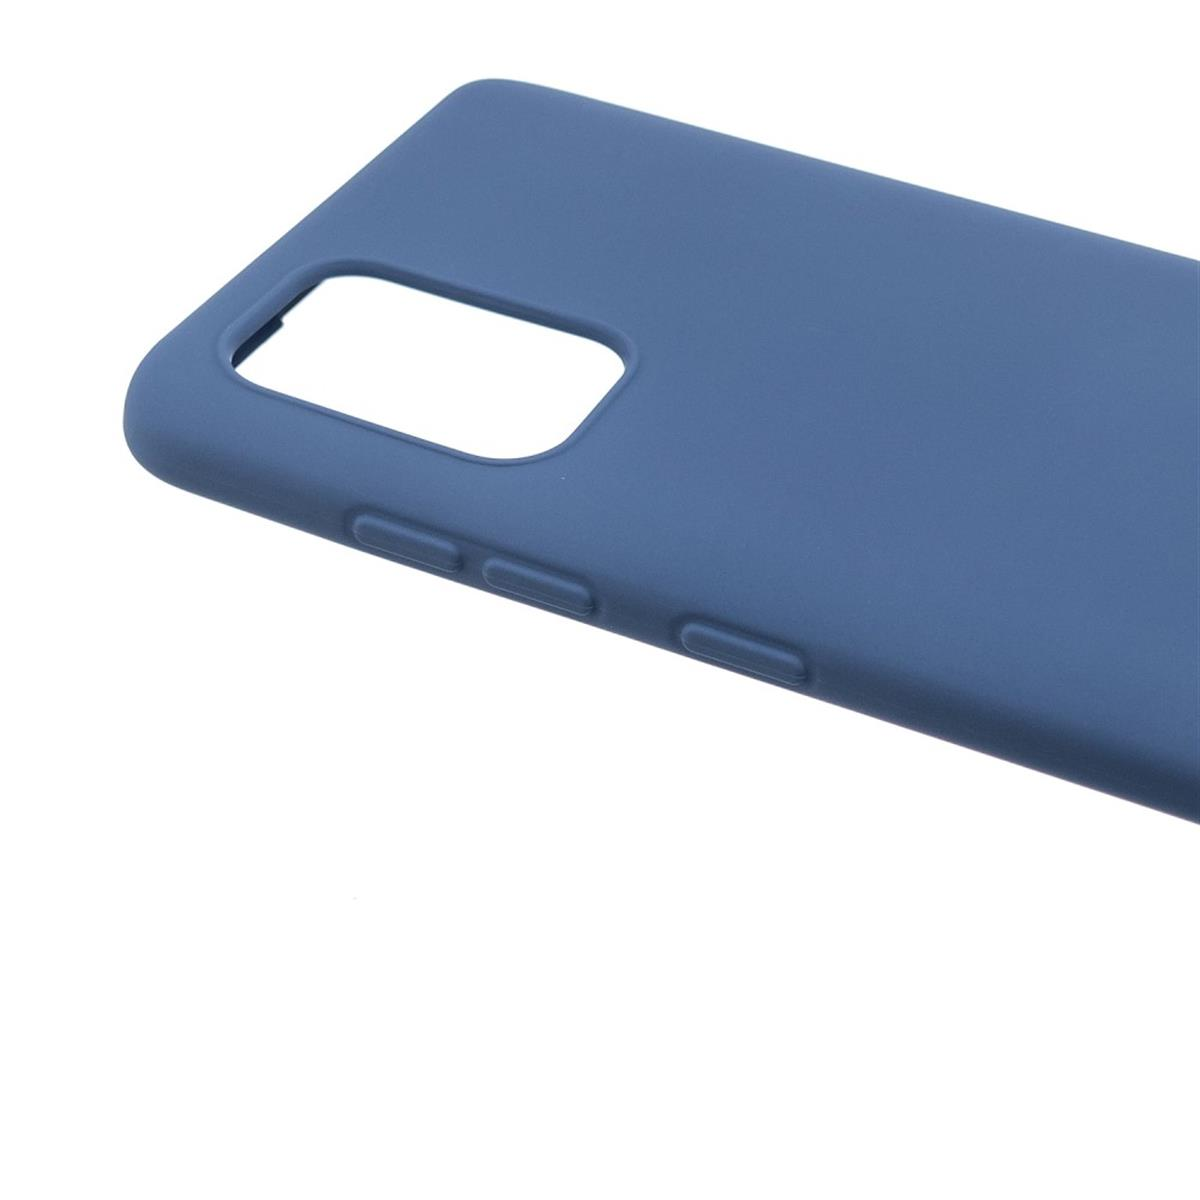 COVERKINGZ Handycase aus Backcover, A52/A52 Galaxy 5G/A52s Samsung, Silikon, 5G, Blau